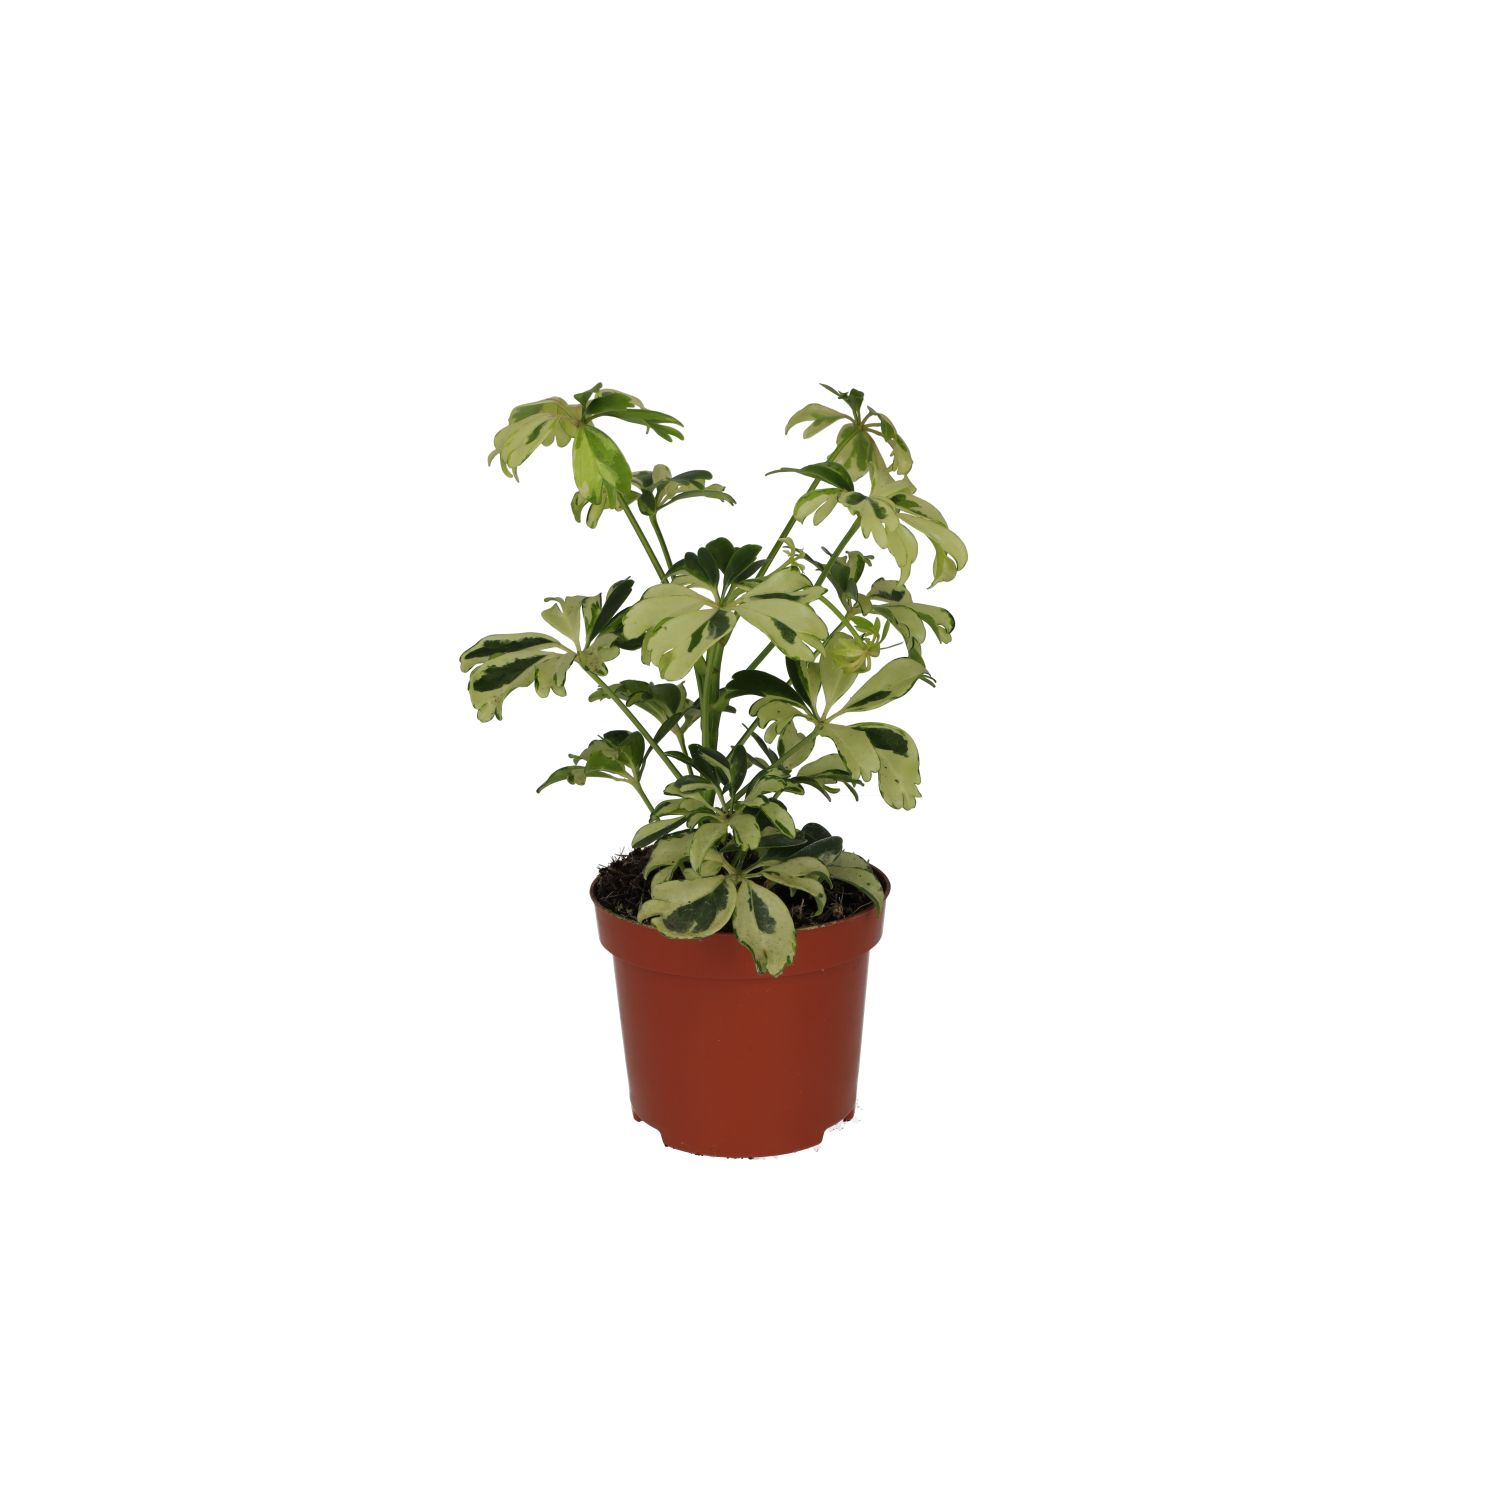 PR Live plant. Schefflera arboricola (Medium)